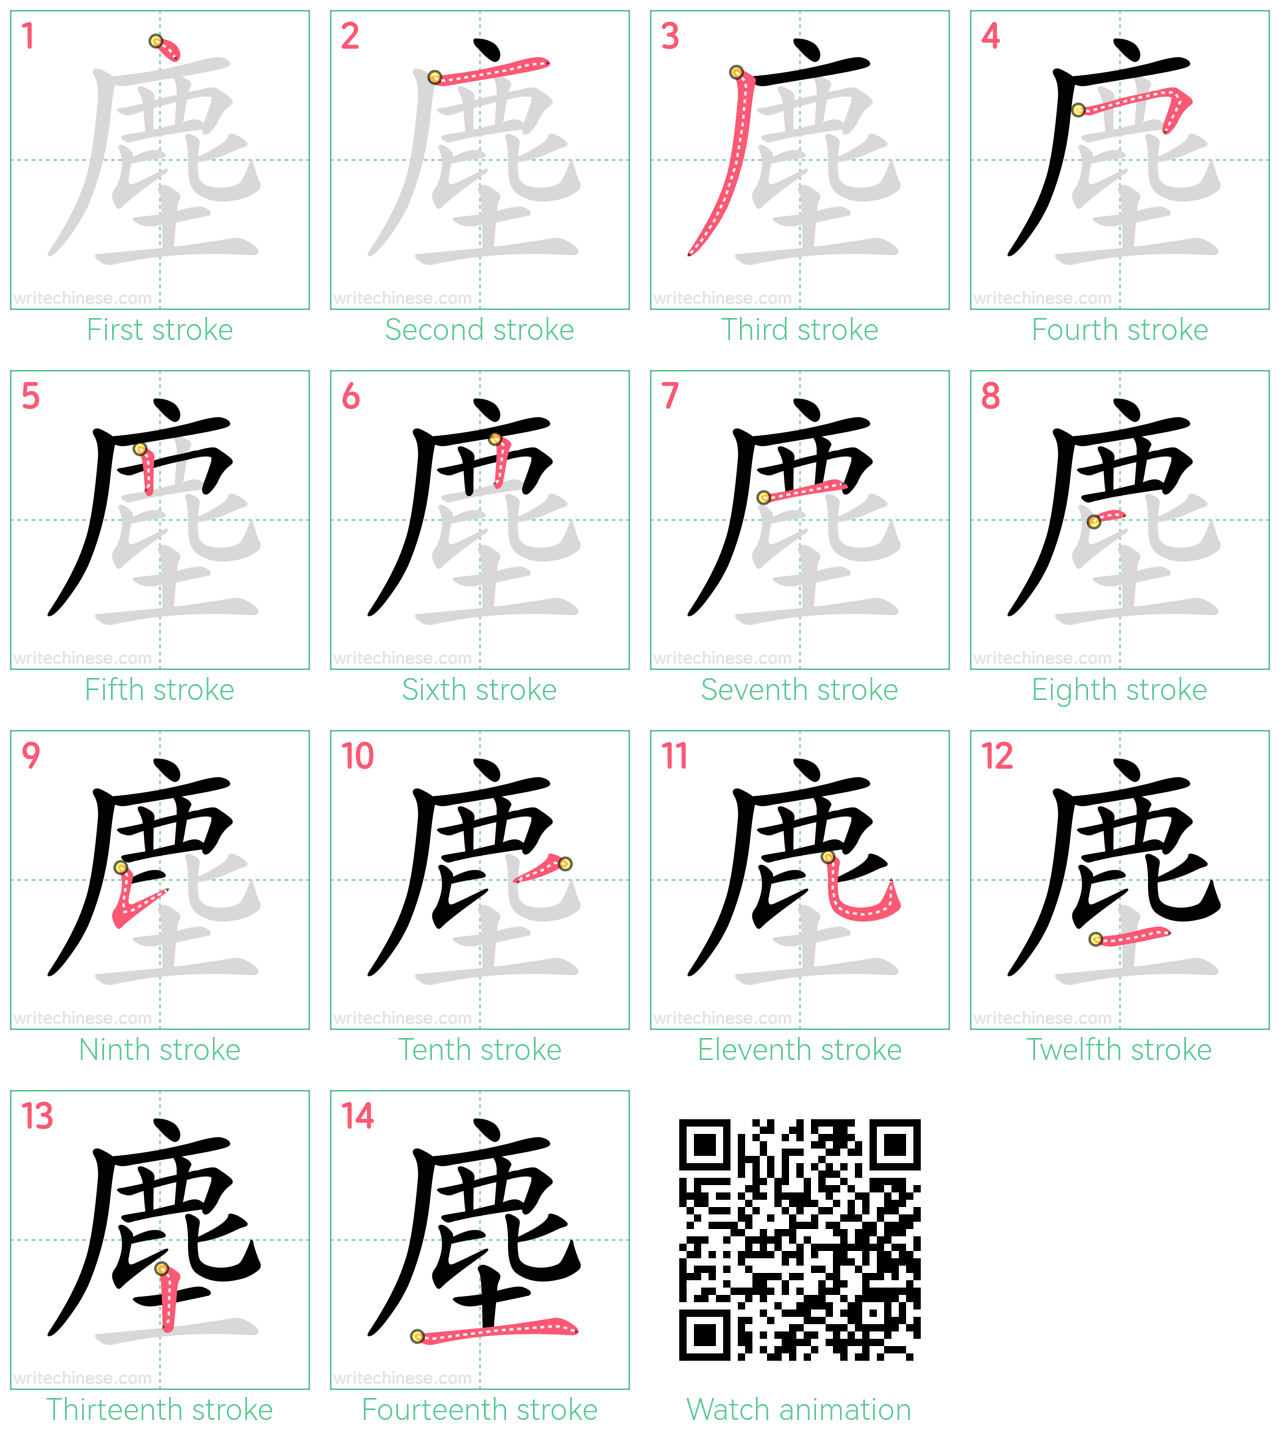 塵 step-by-step stroke order diagrams